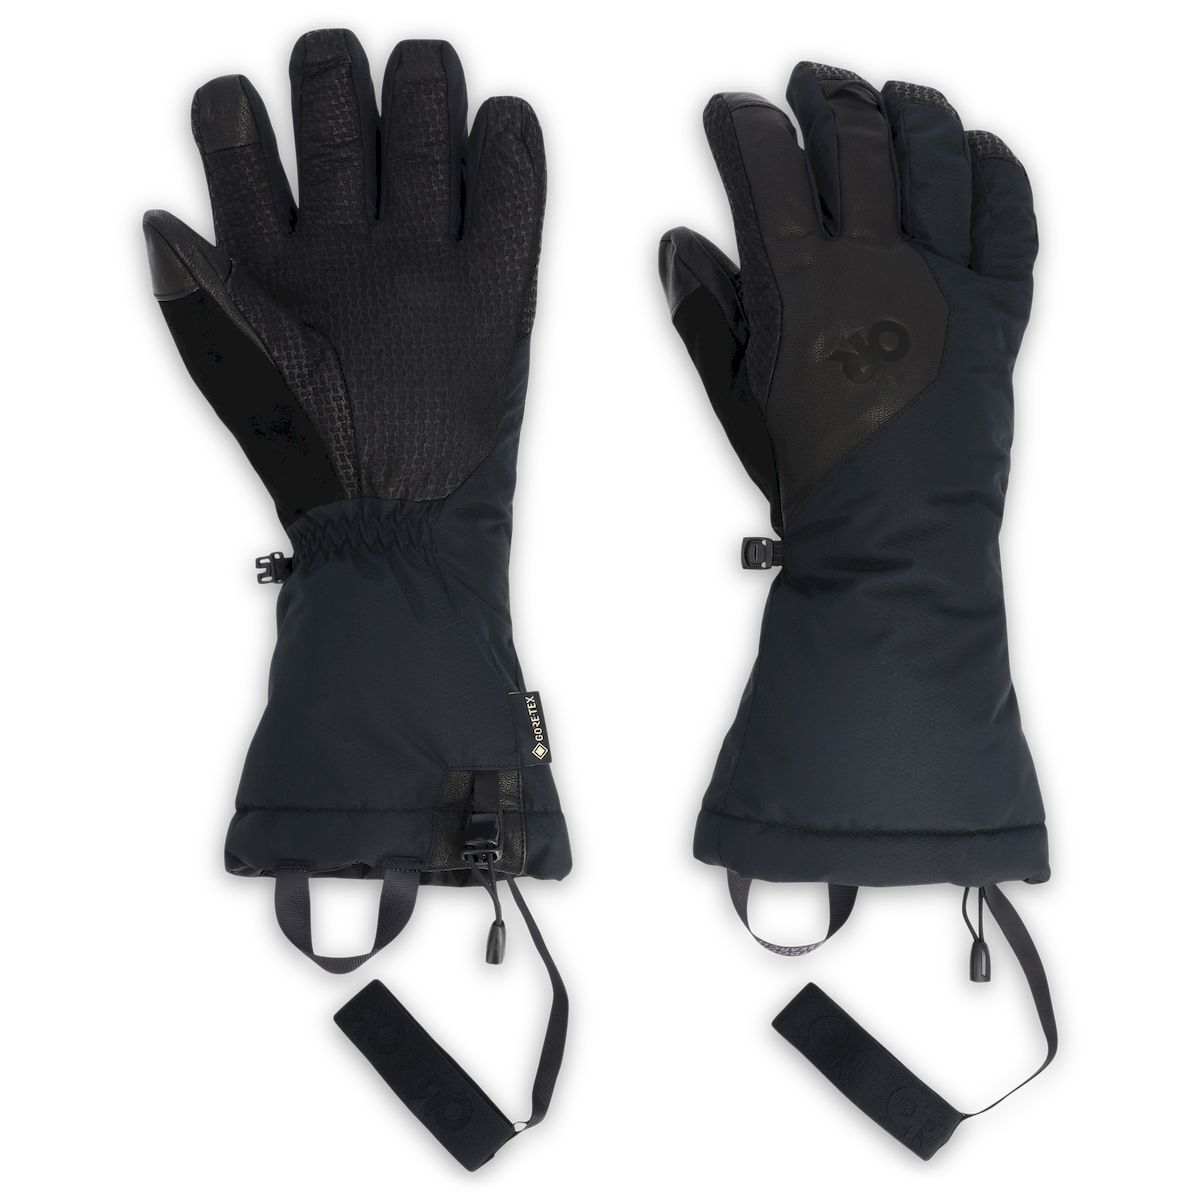 Outdoor Research Super Couloir SensGloves - Skihandschuhe - Herren